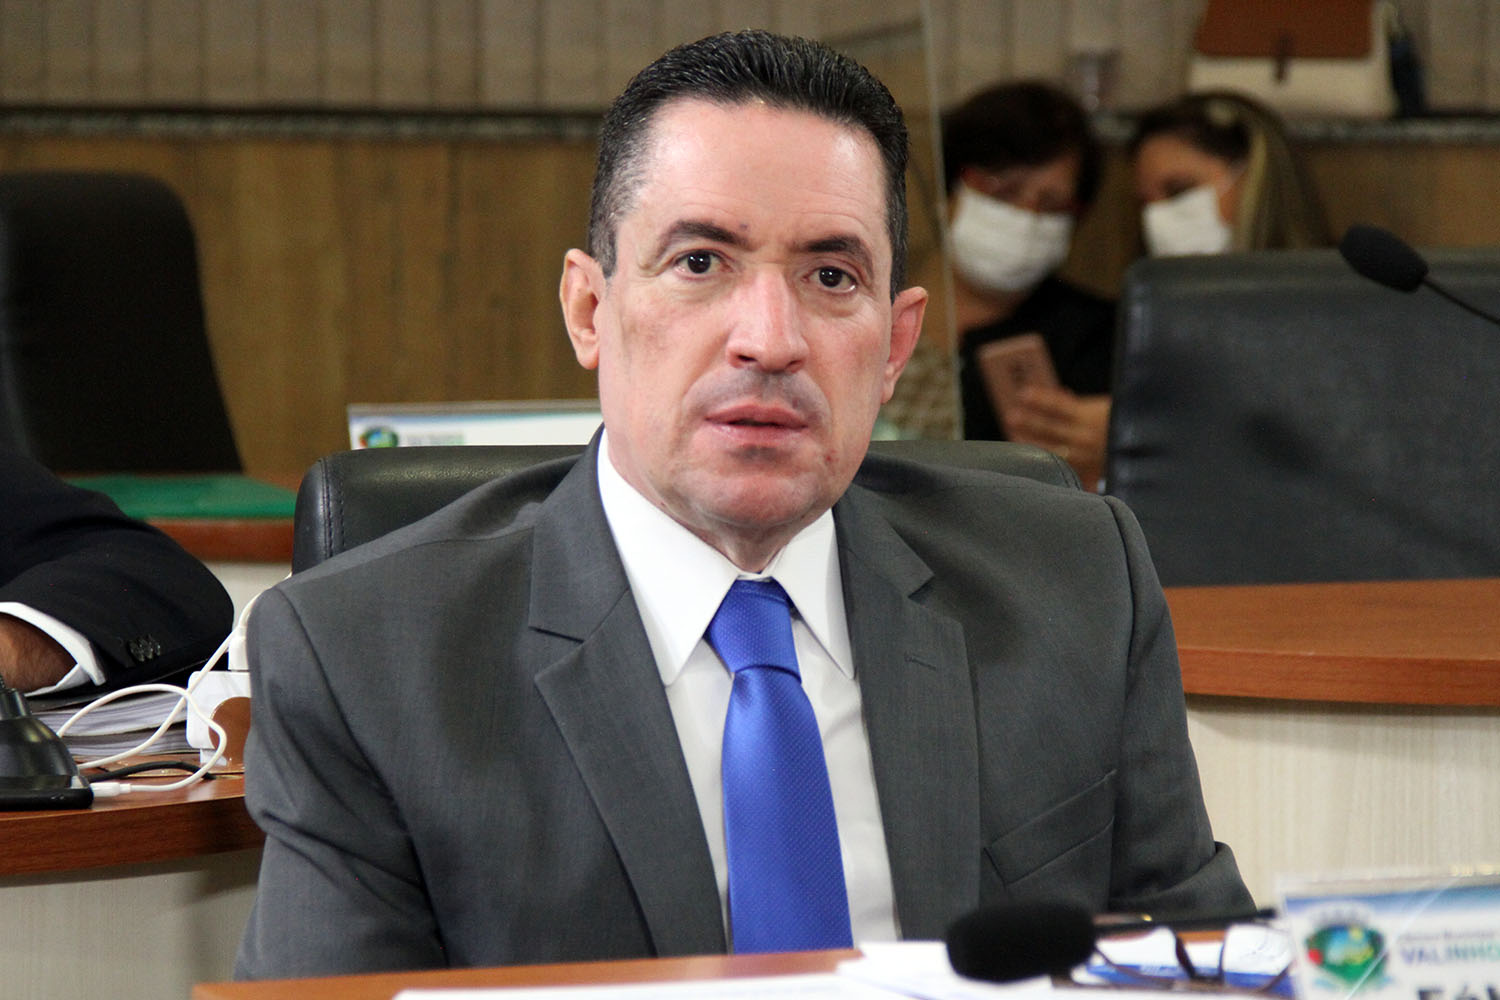 #PraCegoVer: Foto mostra o vereador Fábio Damasceno sentado em seu lugar, durante a sessão ordinária.